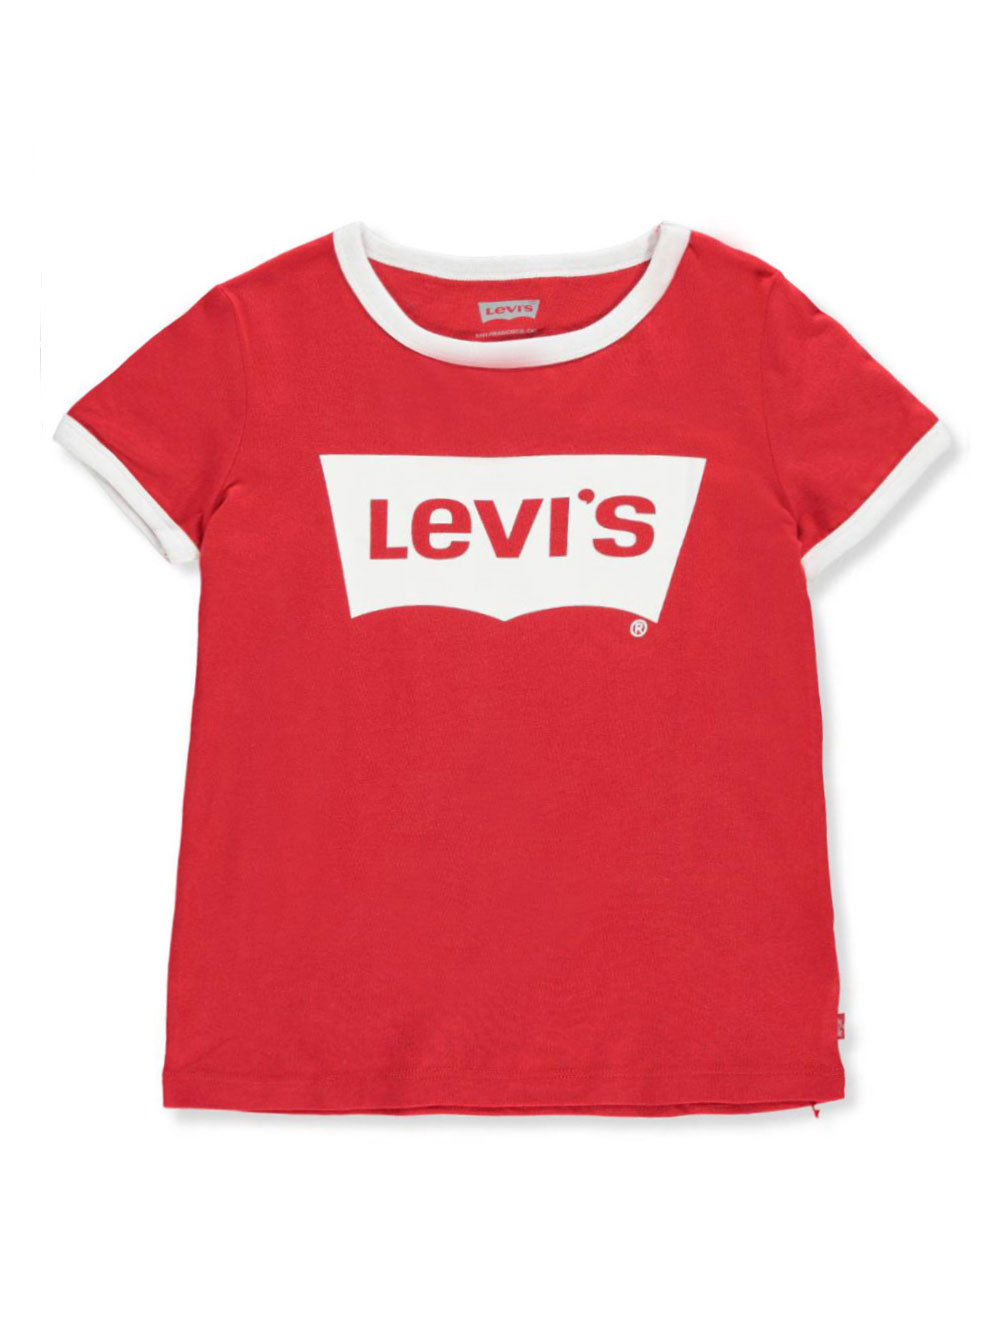 levis girls tshirt